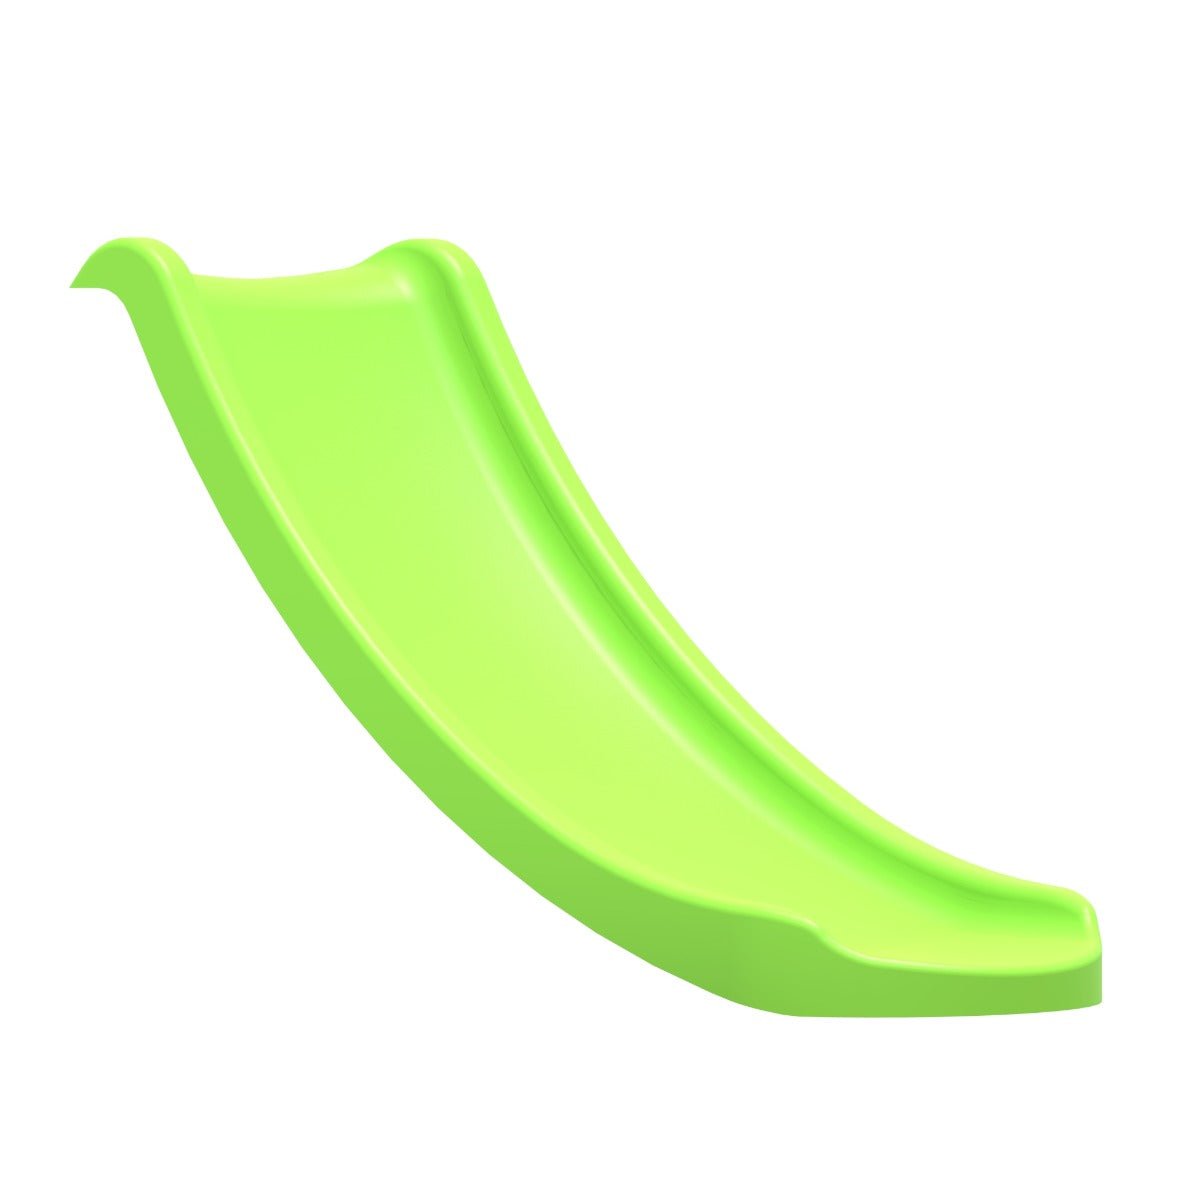 Rebo 4FT (120cm) Universal Children’s Plastic Garden Wave Slides - Light Green